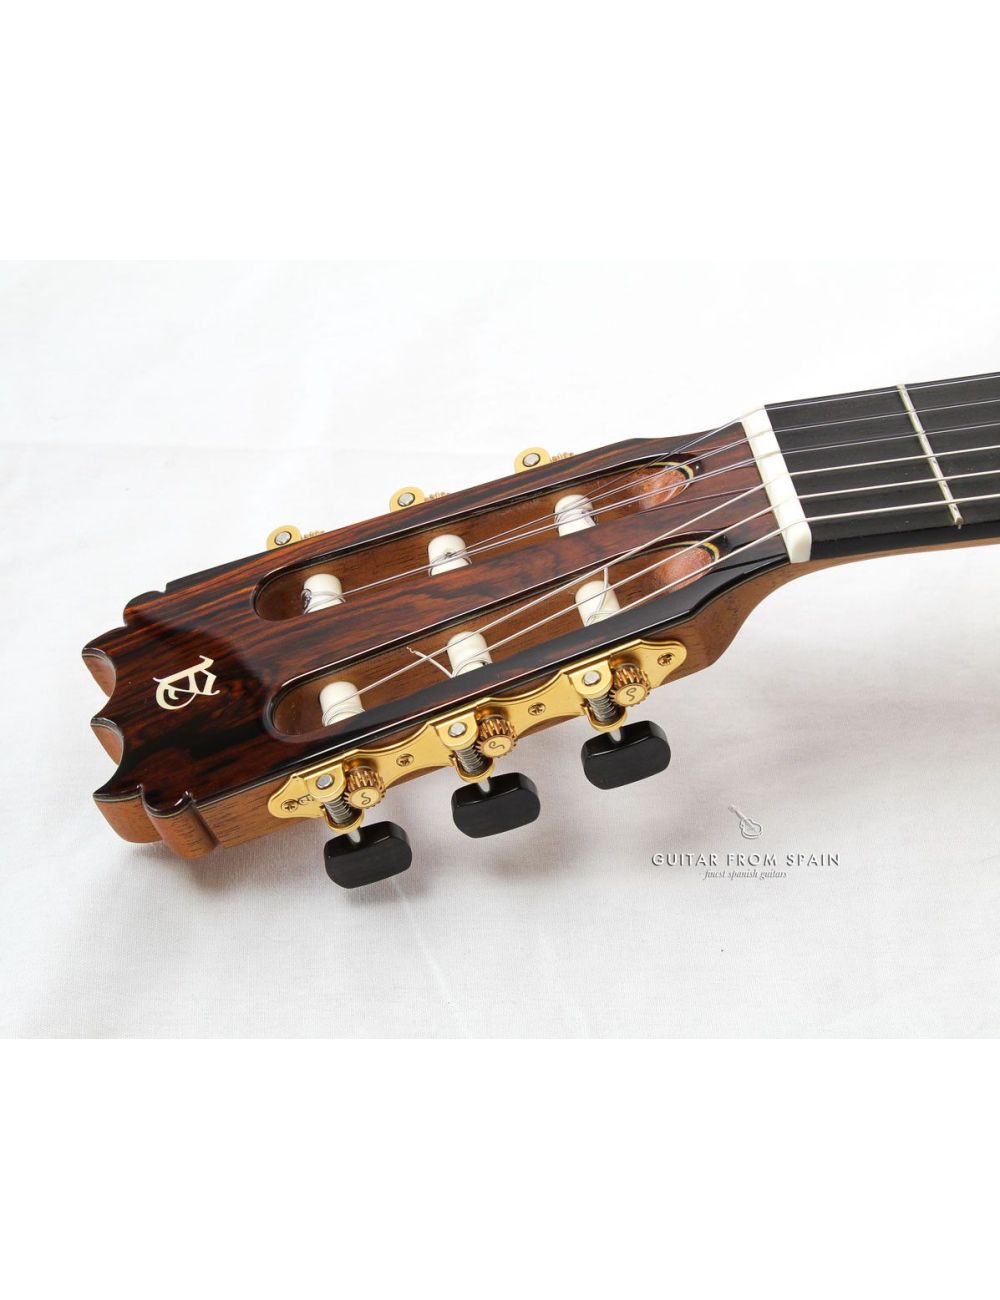 Alhambra N4 / Schaller Grand Tune Classic Hausser - Klassische Gitarre Mechanik